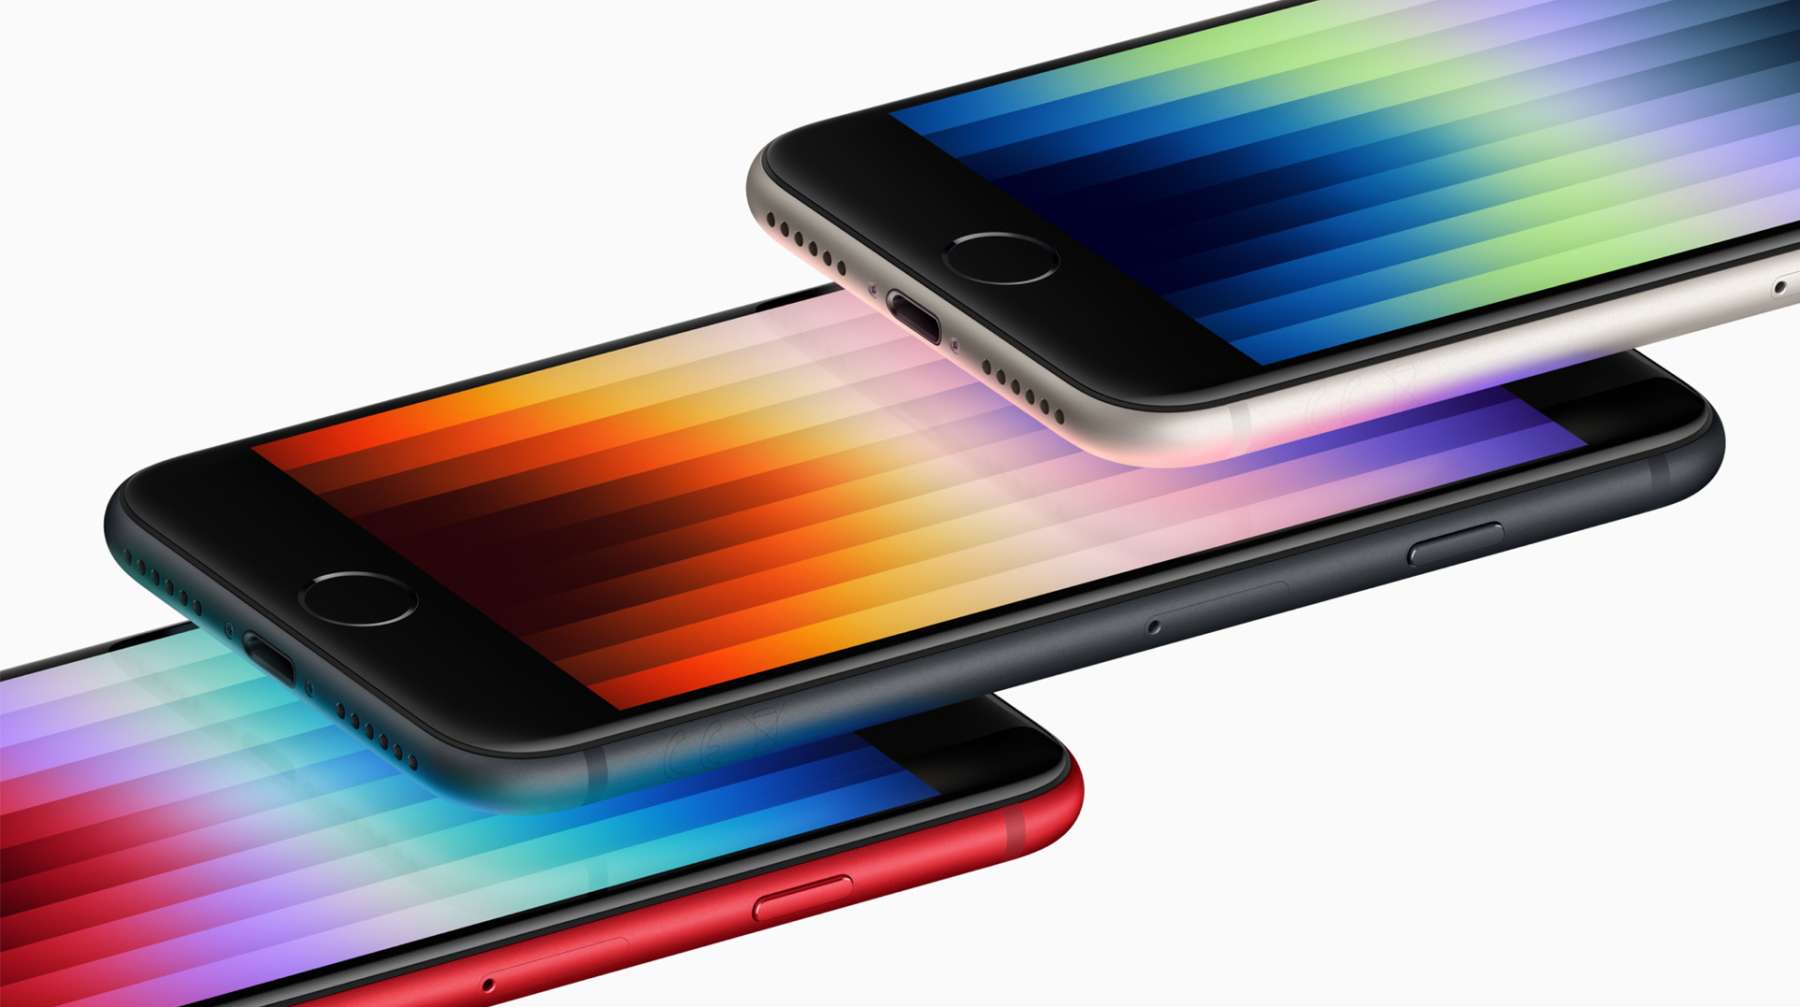 premiera apple iphone se 3 5g specyfikacja cena